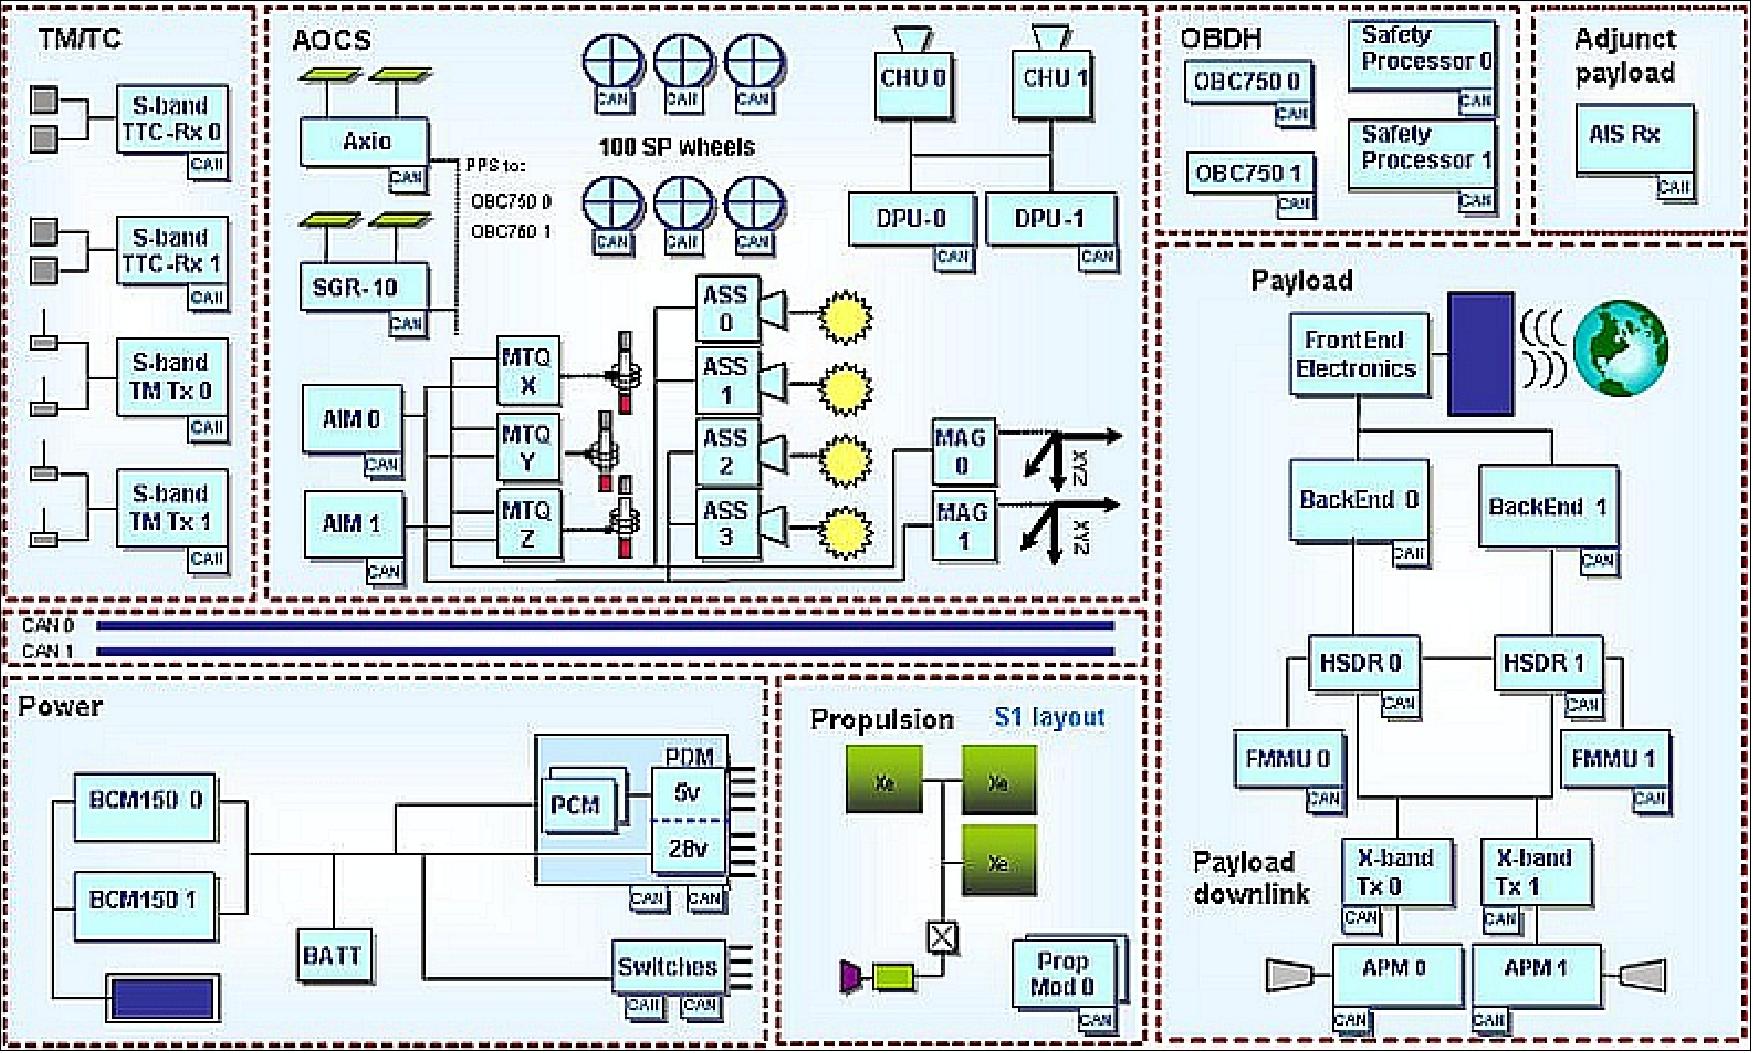 Figure 2: Electrical architecture of the NovaSAR-1 platform (image credit: SSTL, Ref. 15)